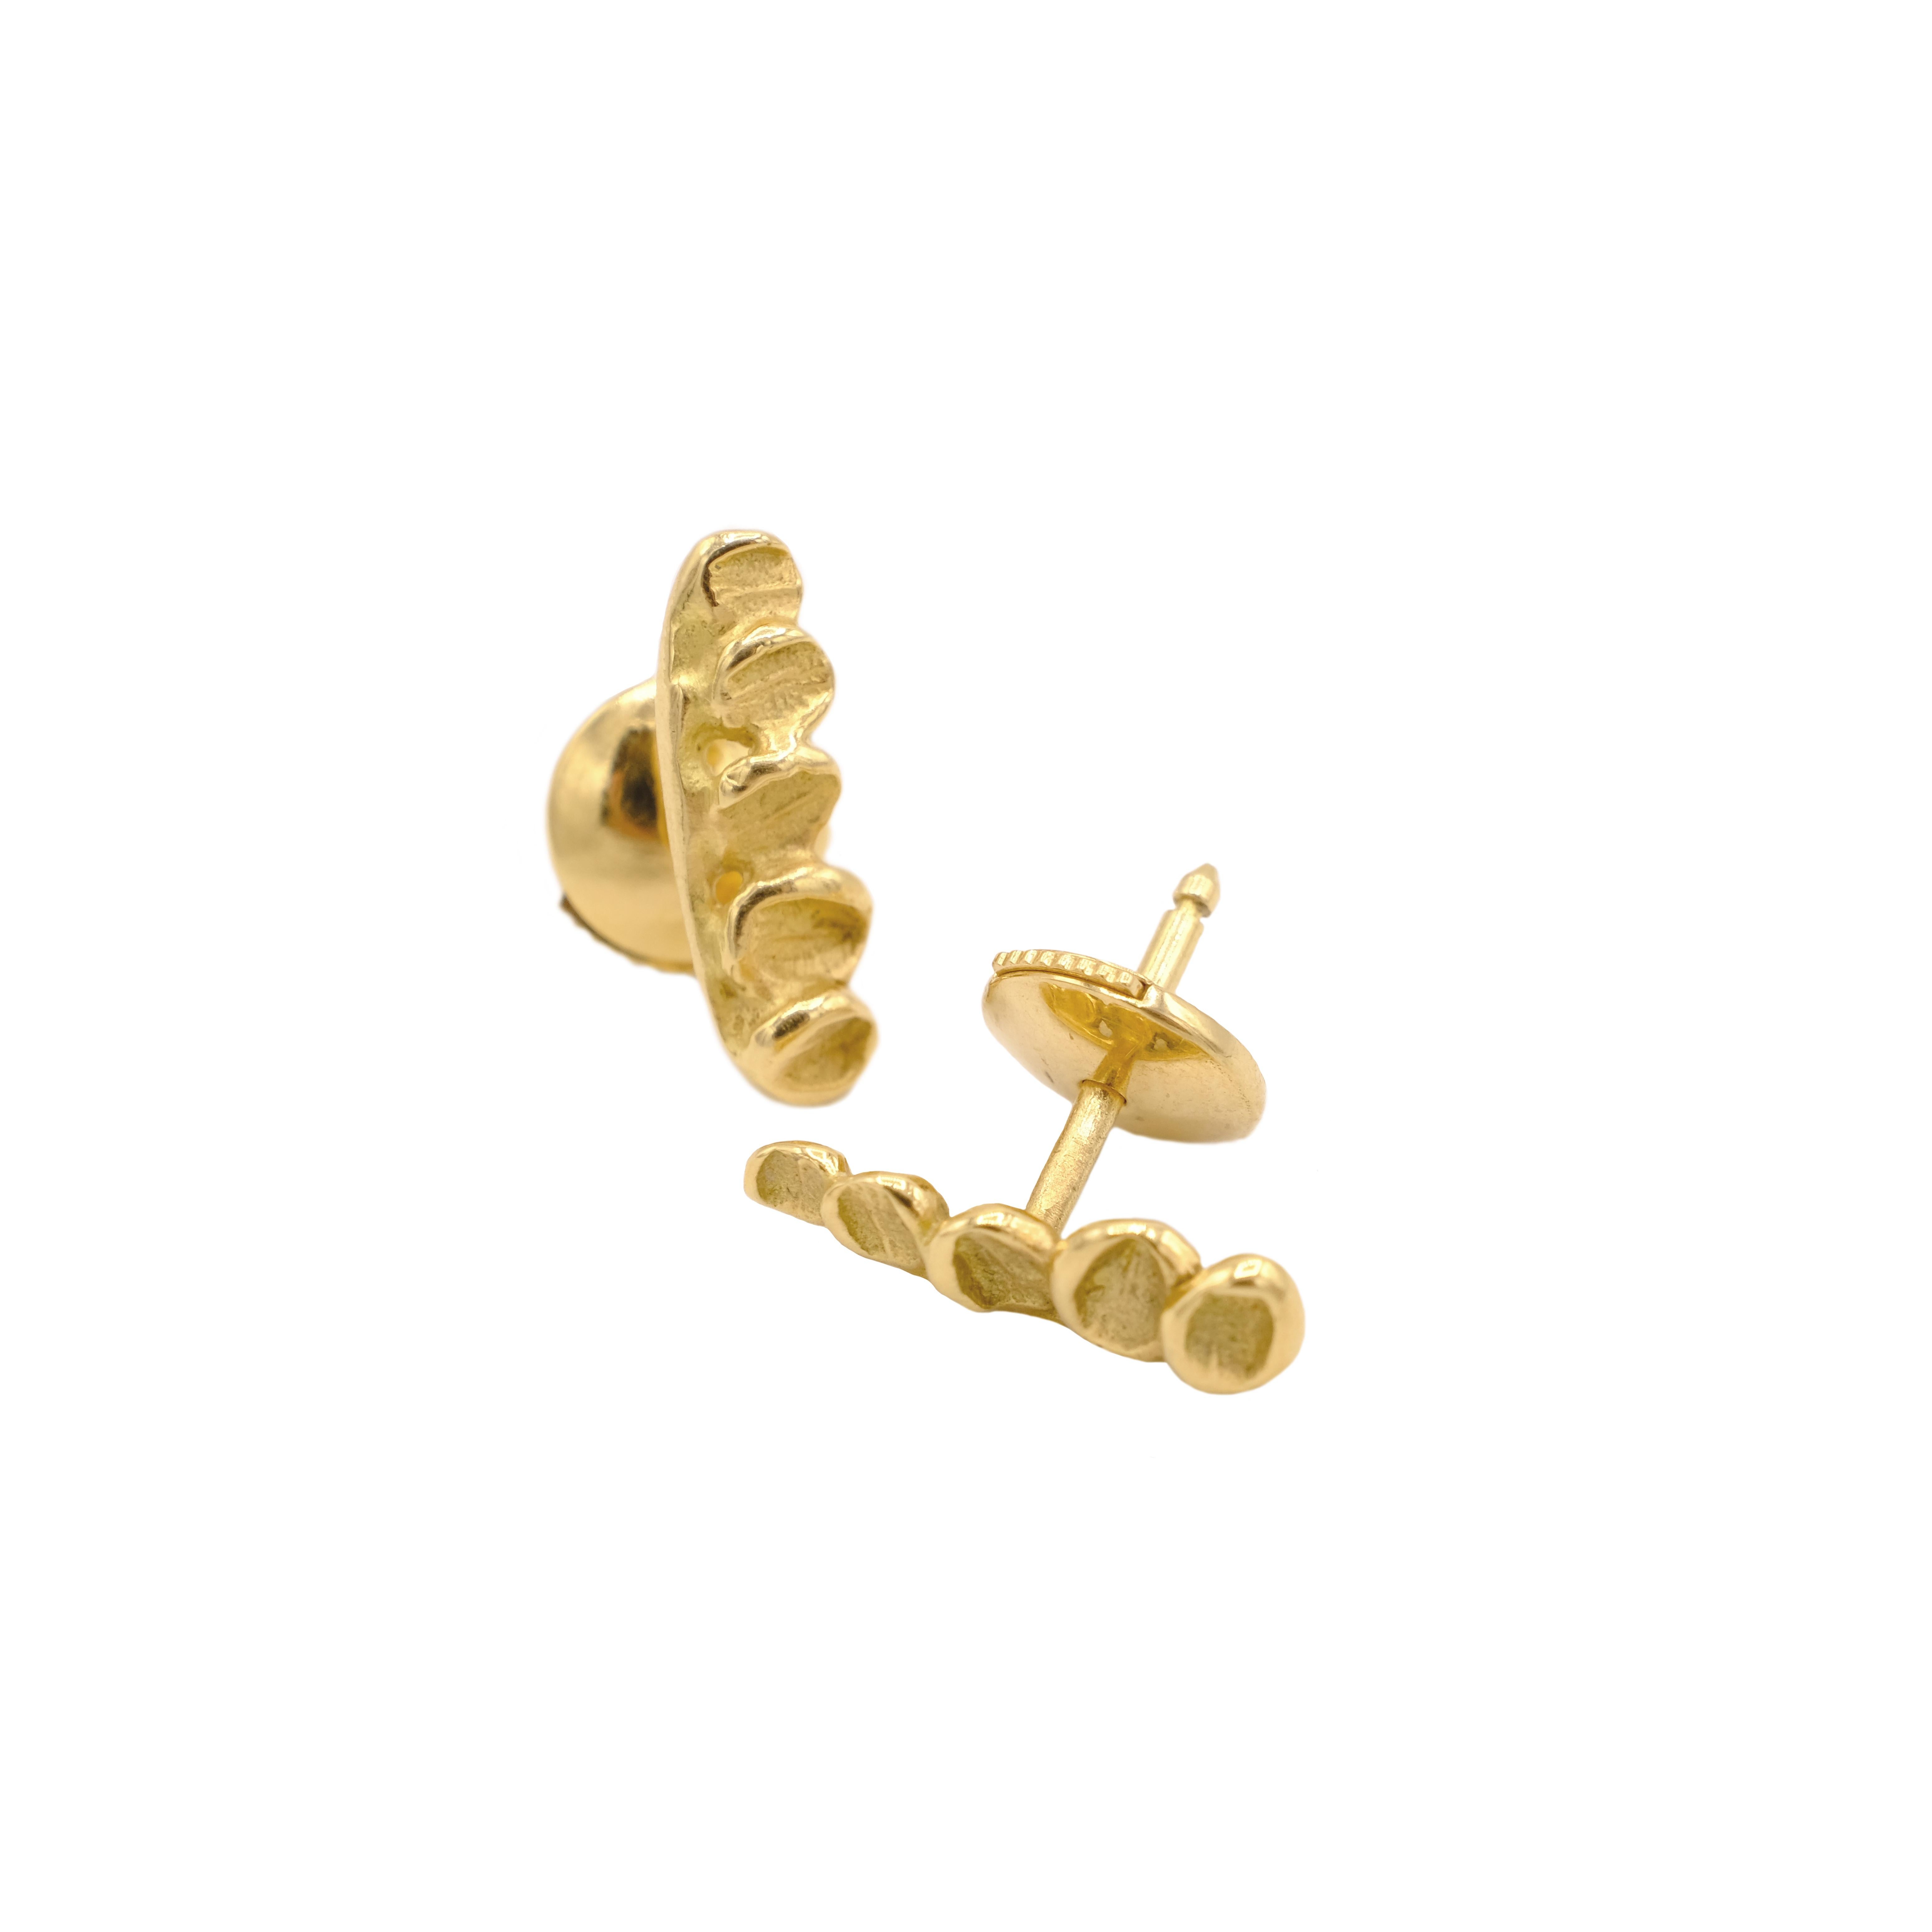 18 karat yellow gold earrings